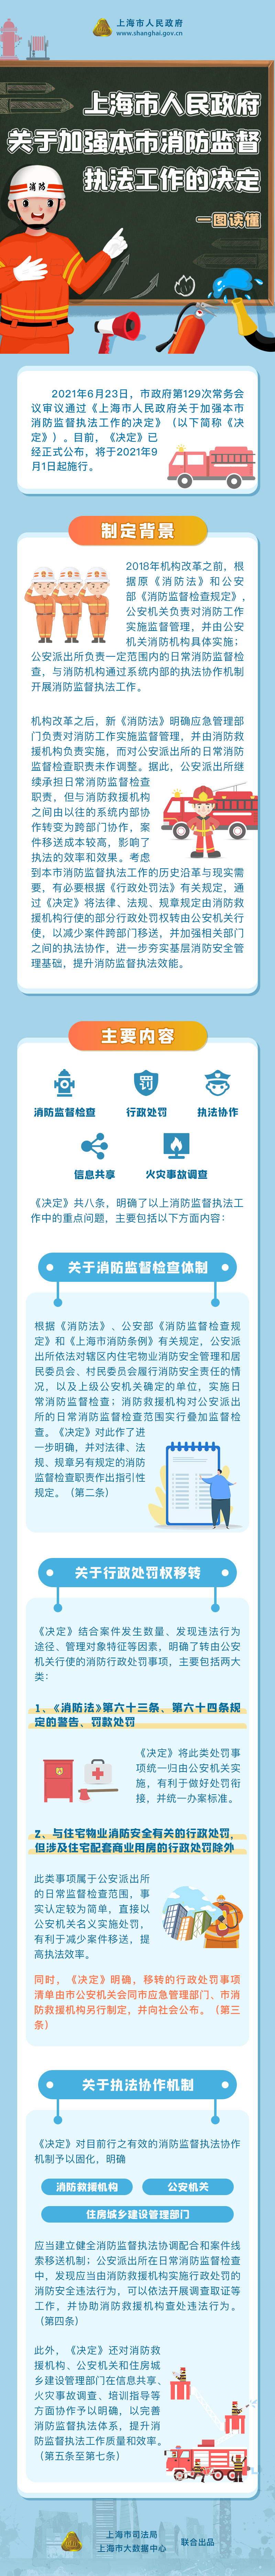 关于《上海市人民政府关于加强本市消防监督执法工作的决定》的解读.jpg